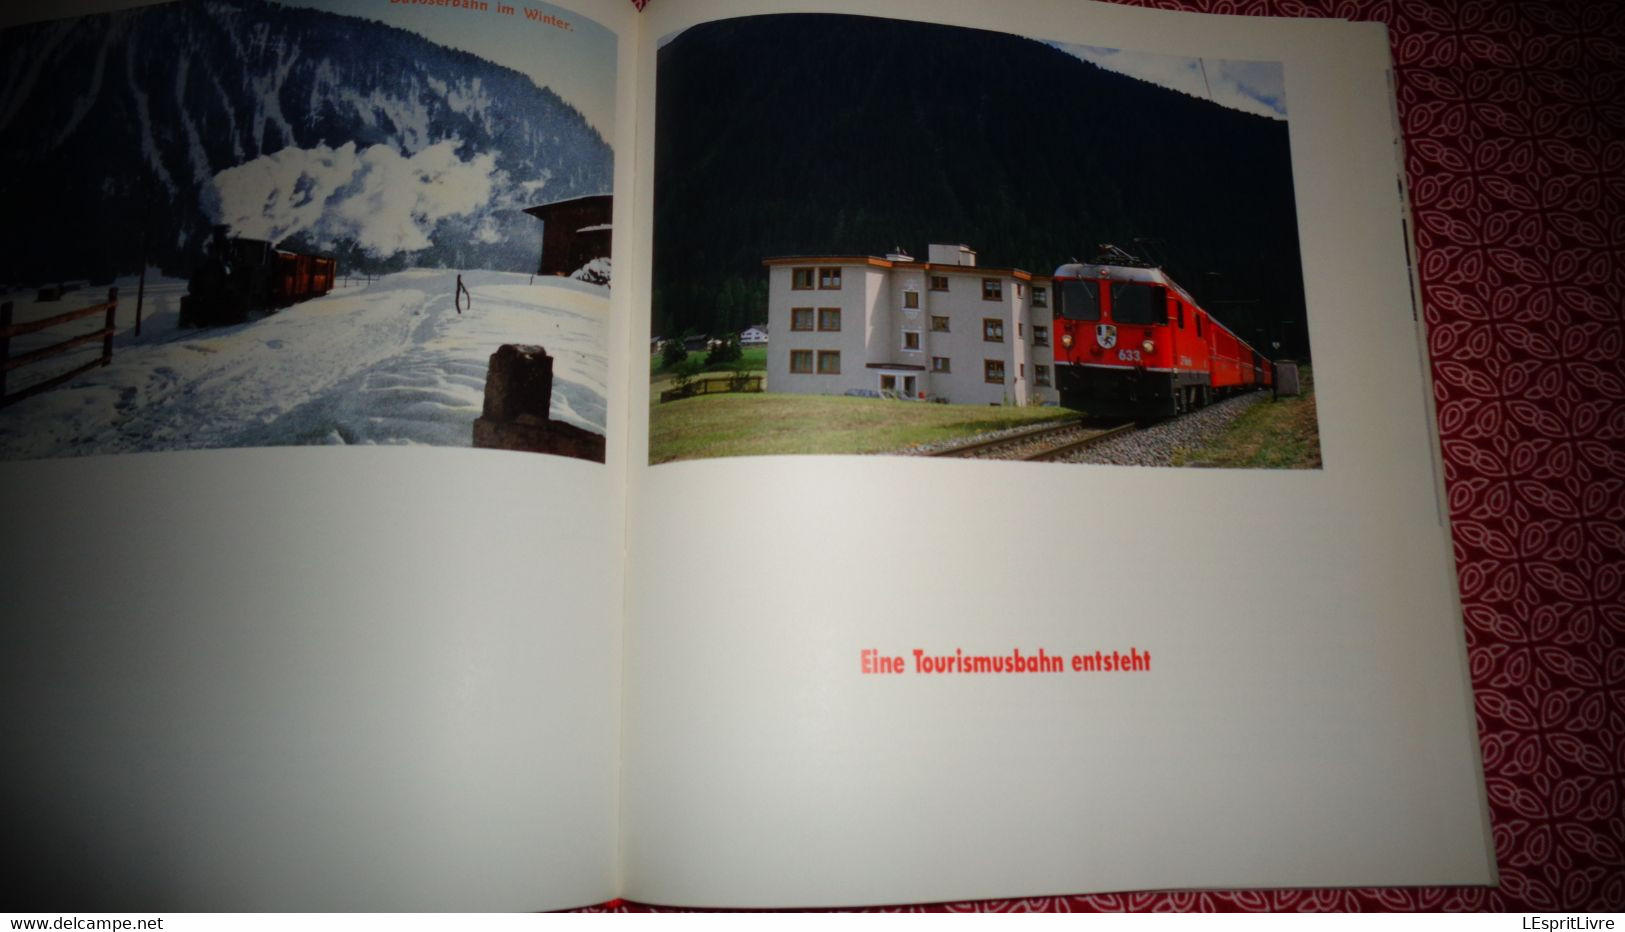 RHÄTISCHE BAHN RhB Switzerland Suisse Chemins de Fer Suisse Railway Swiss Eisenbahn Davos Arosa Churs CFF